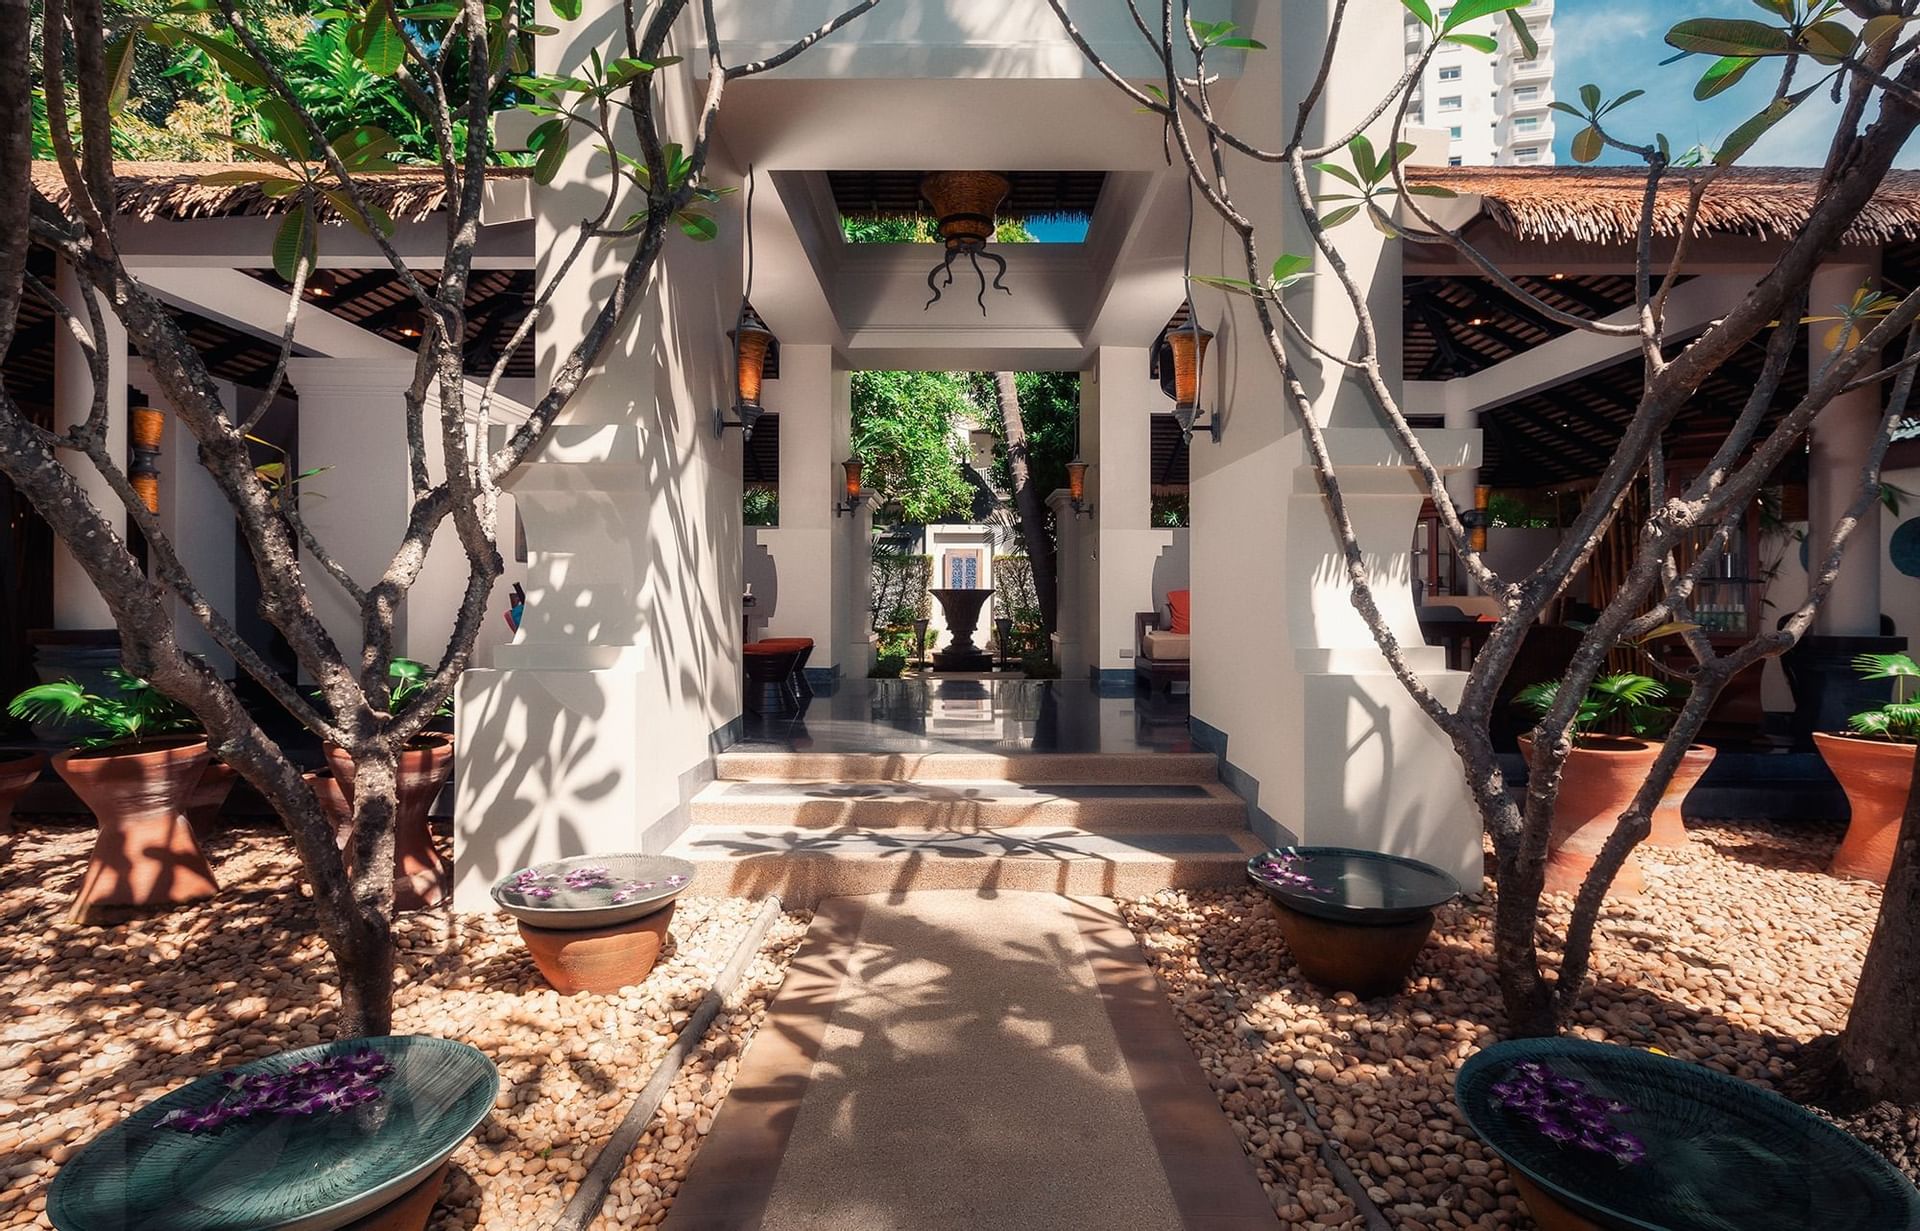 The entrance to the spa at Paradox Resort Phuket